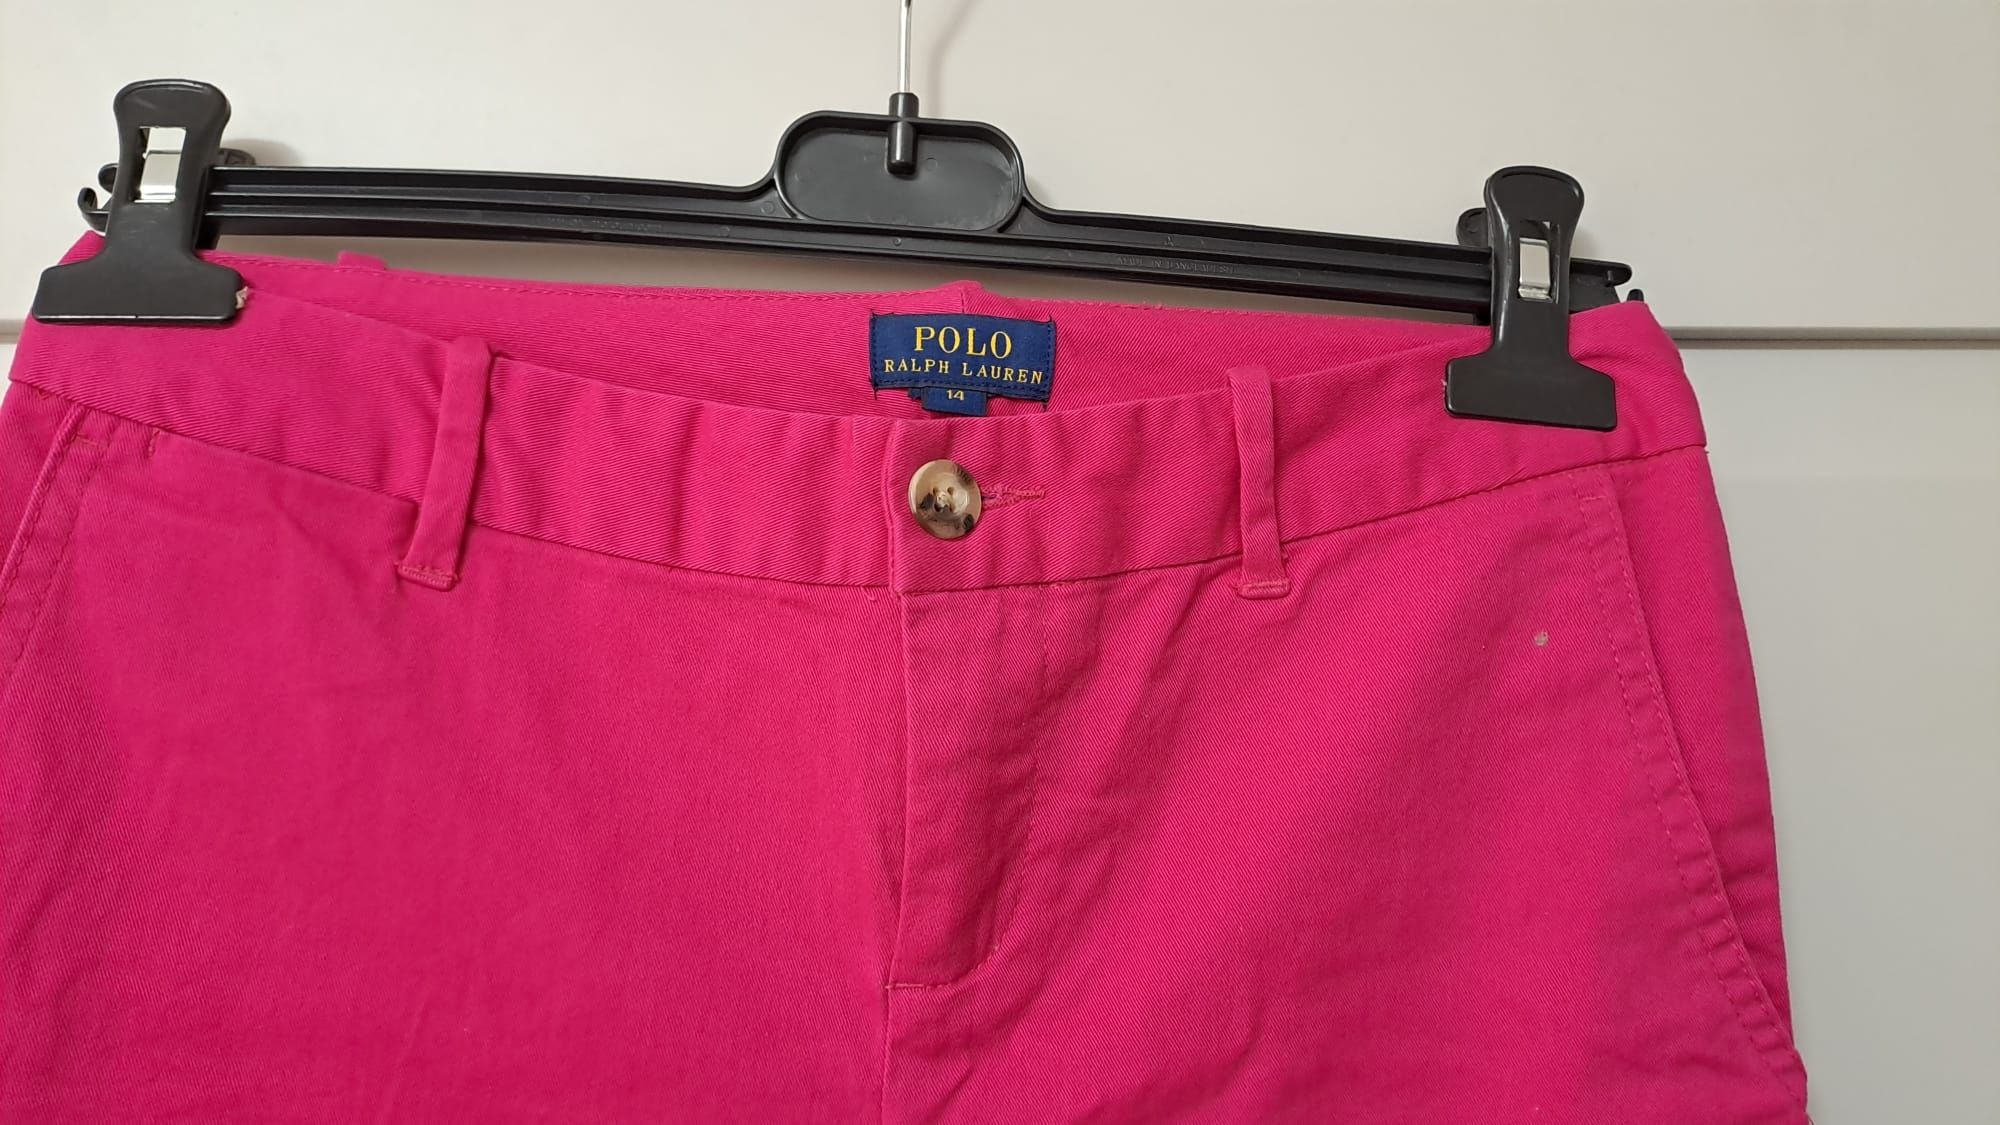 Pantaloni Ralph Lauren originali pentru fete